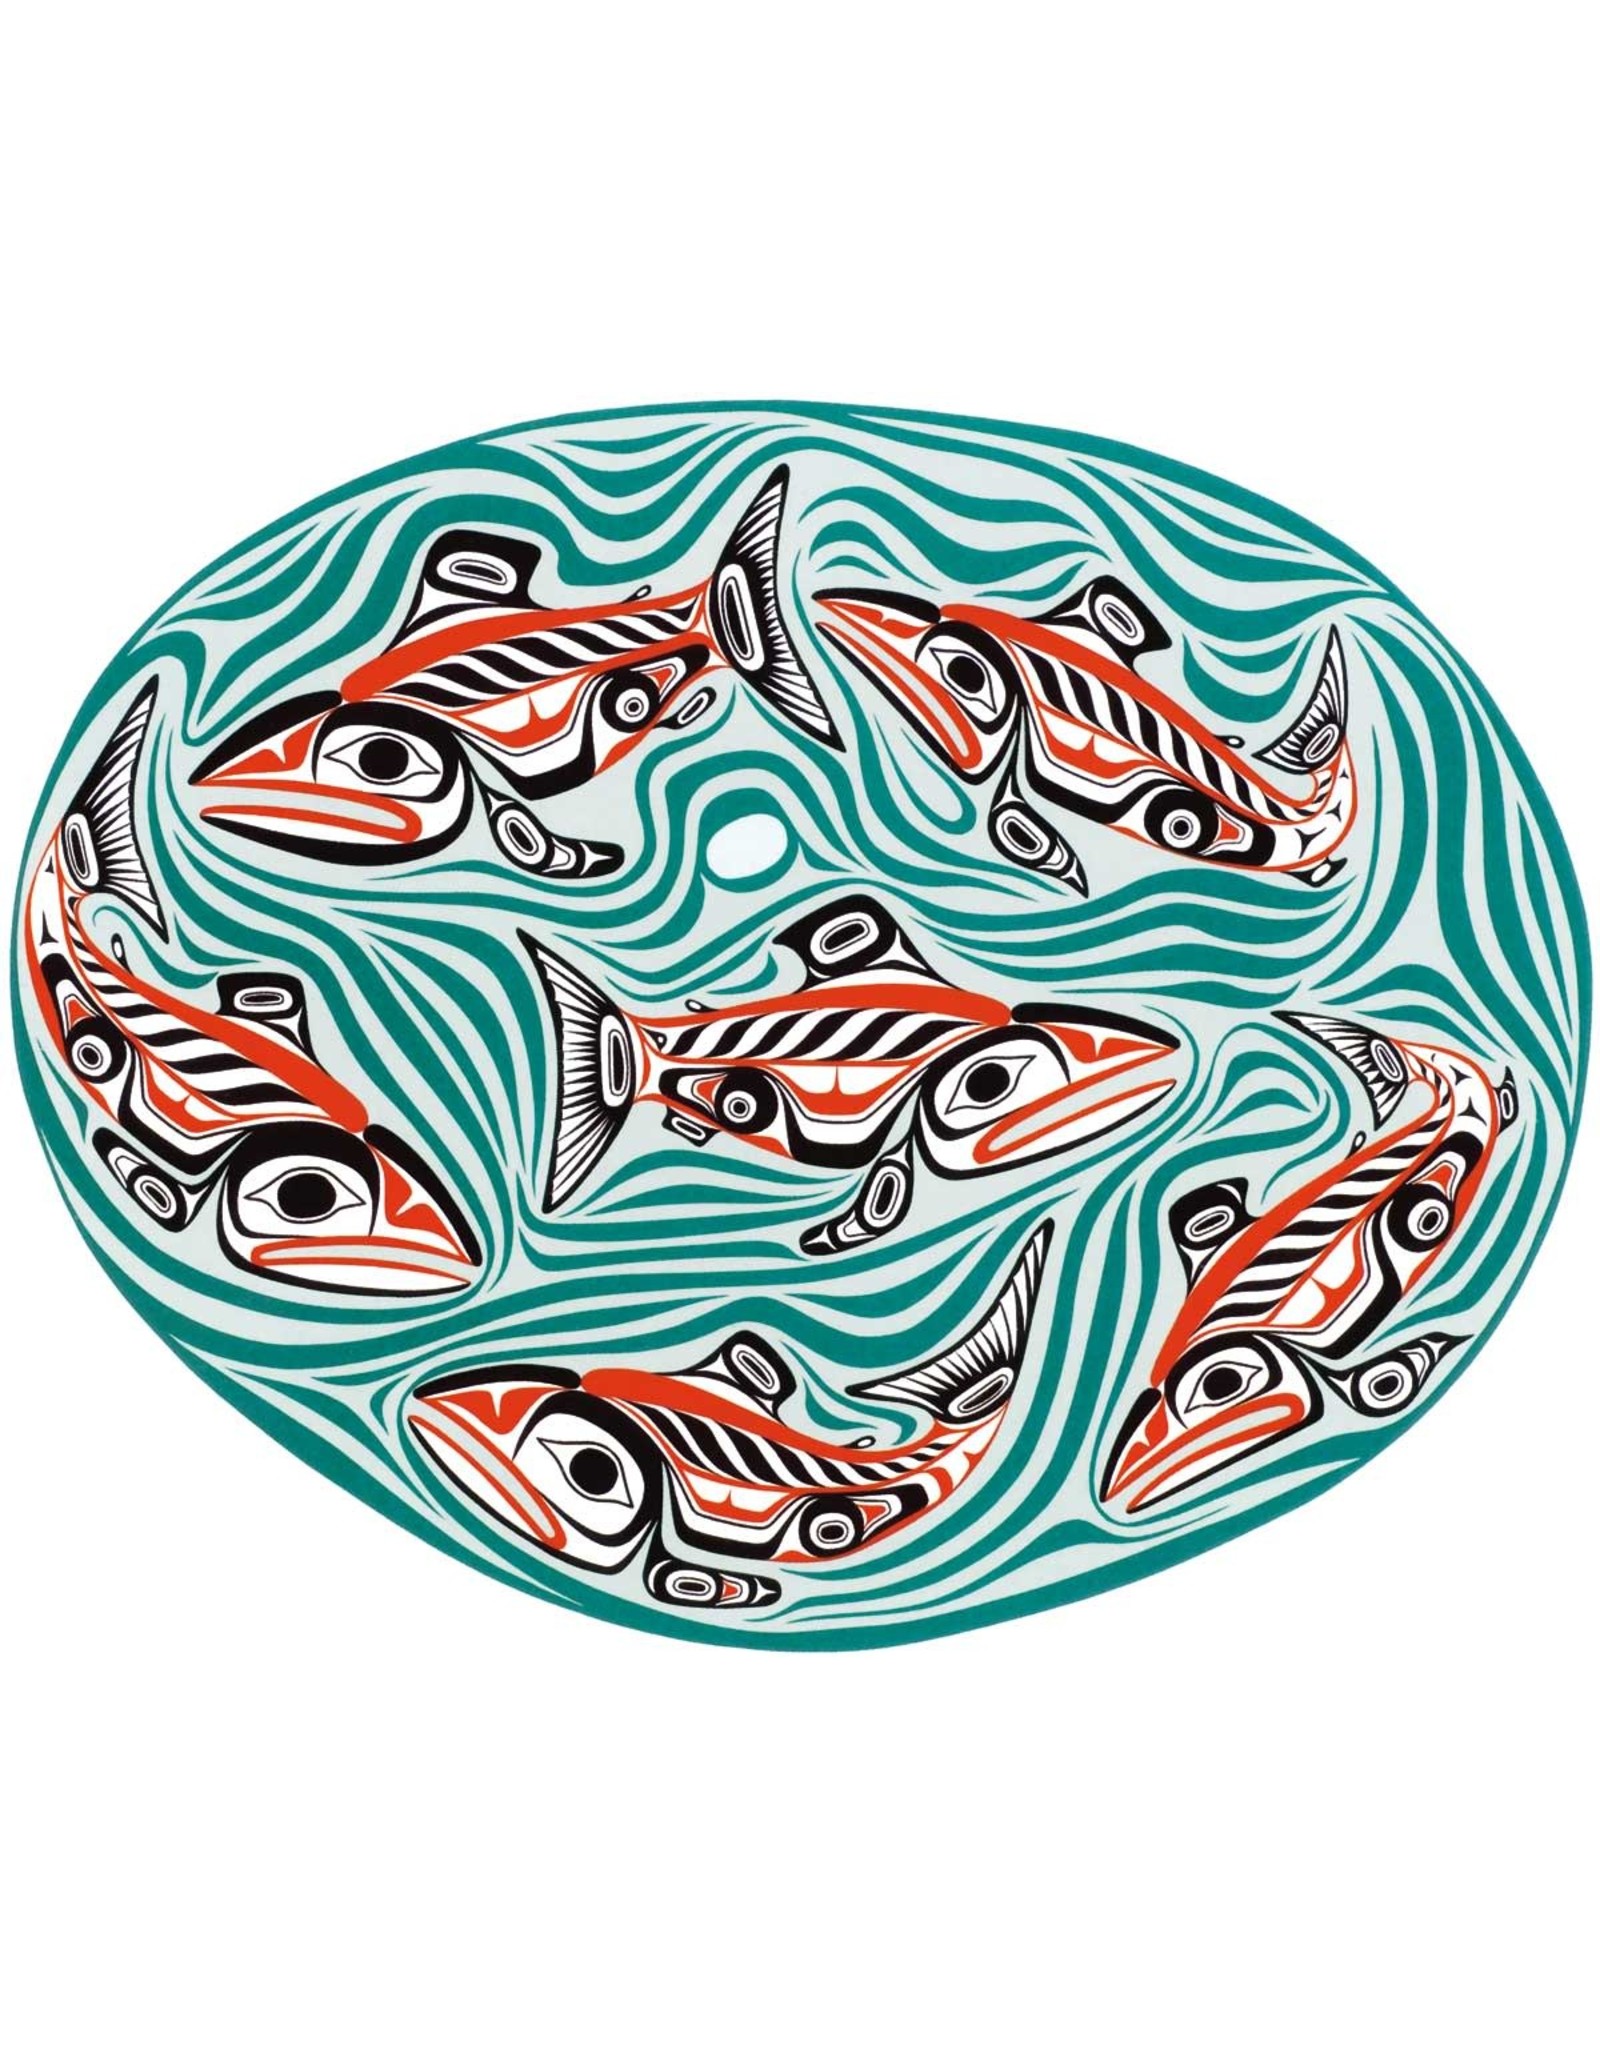 Swg'ag'aann-Sockeye Salmon Pool by Bill Reid Card